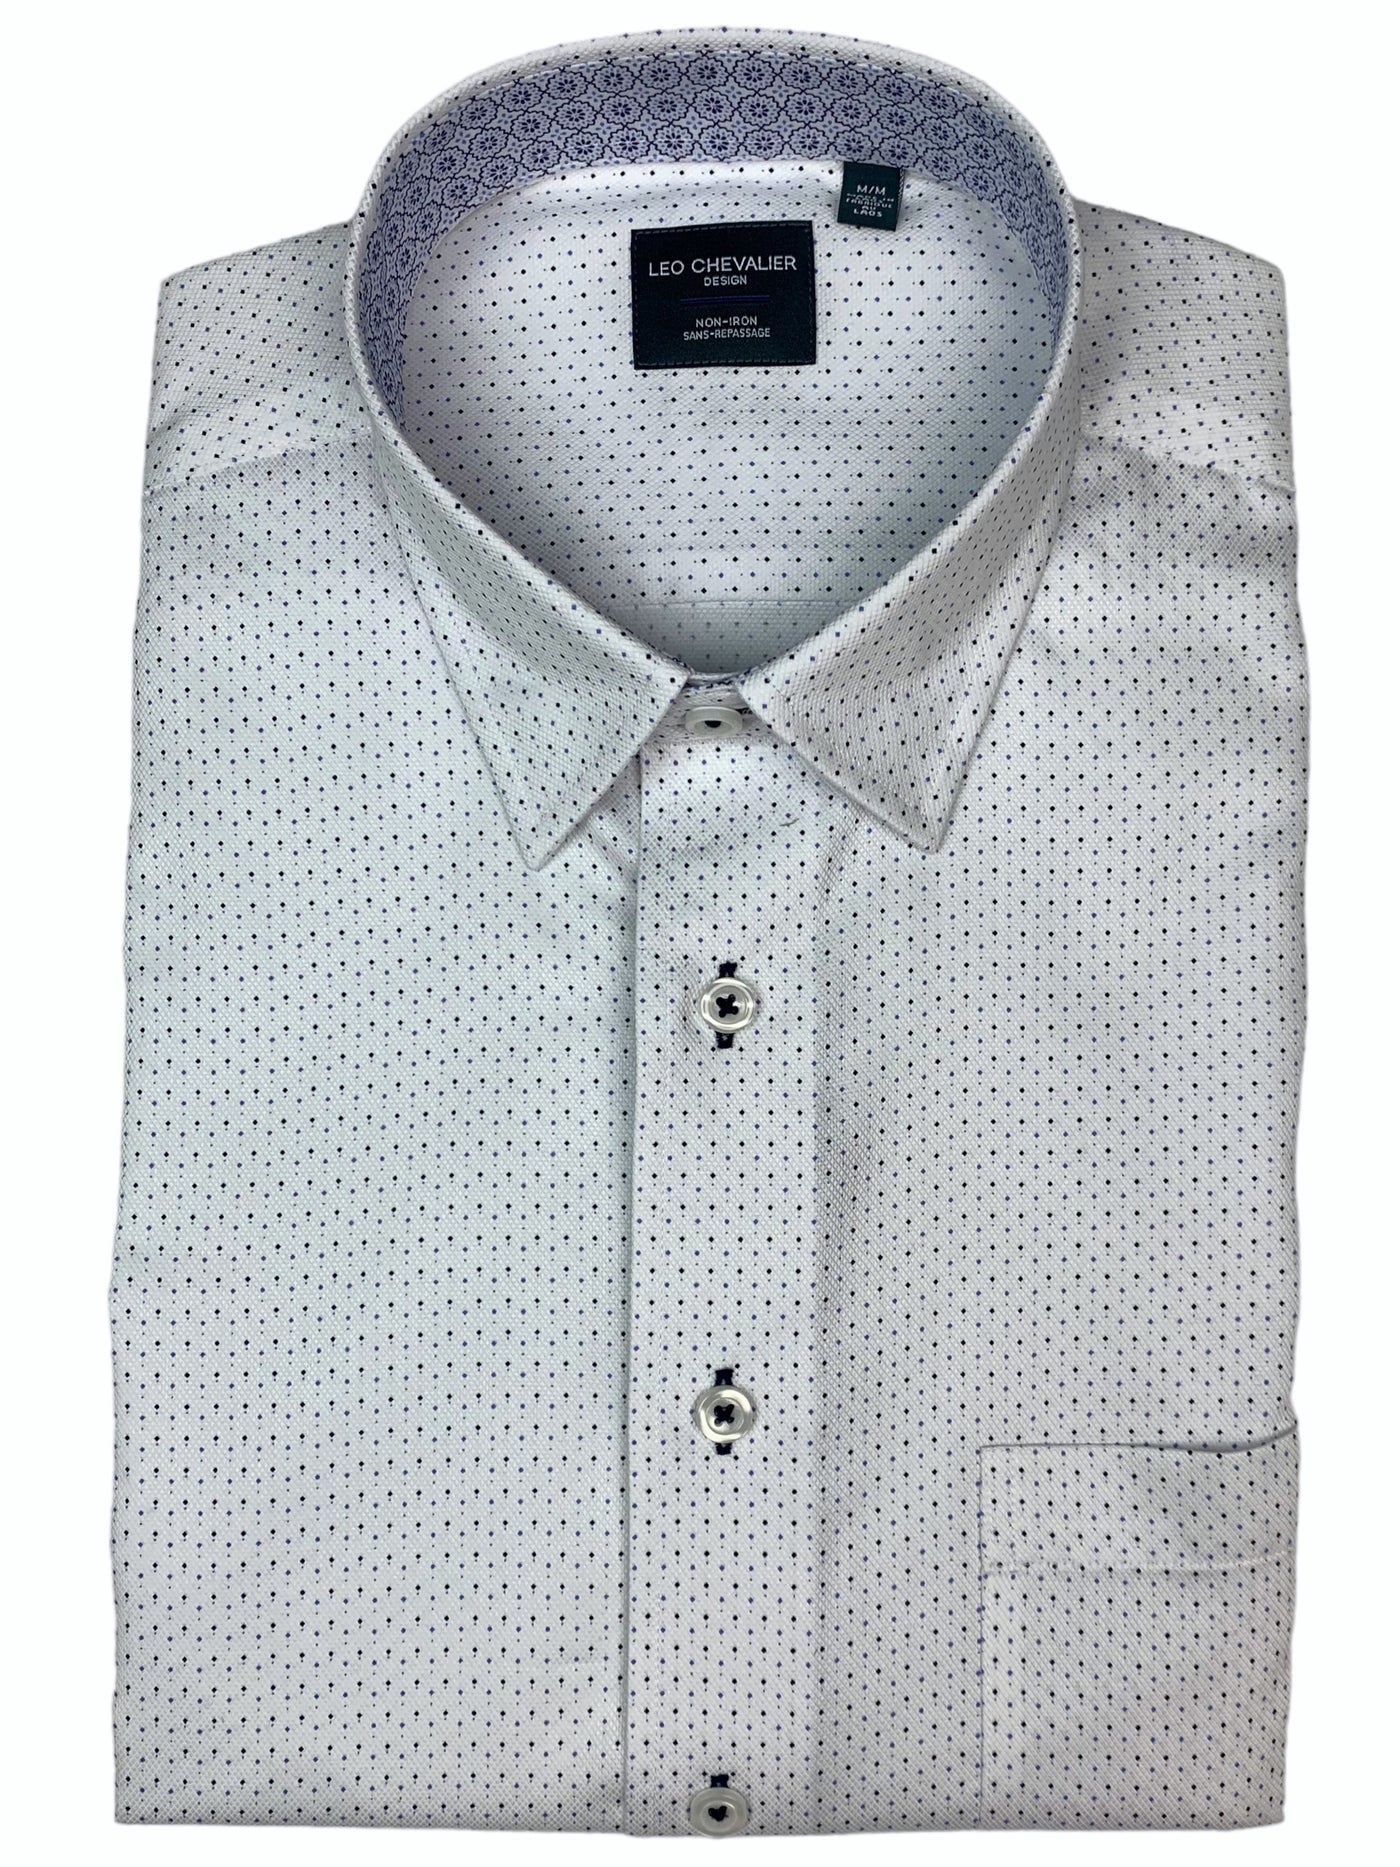 Chemise manches courtes blanche à micro motif